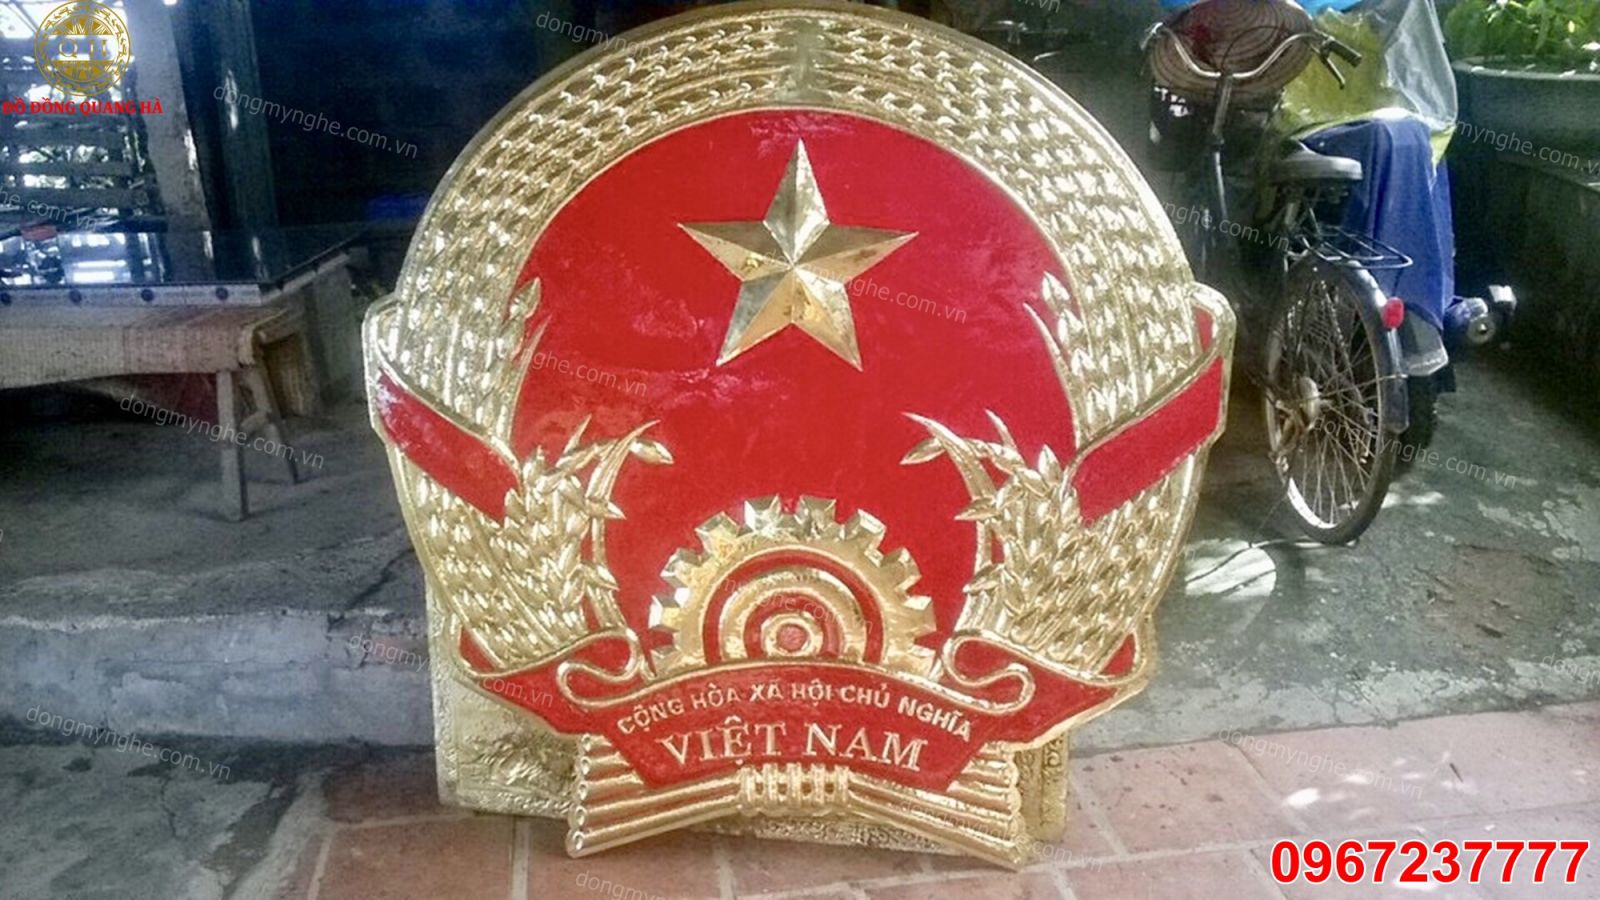 Đồng quốc huy Việt Nam là biểu tượng tuyệt vời nhất để thể hiện tình yêu quê hương của bạn. Bạn cảm thấy tự hào khi nhìn thấy sự kiêu hãnh và ấn tượng của đồng quốc huy này. Hãy xem hình ảnh liên quan để khám phá thêm về nó.